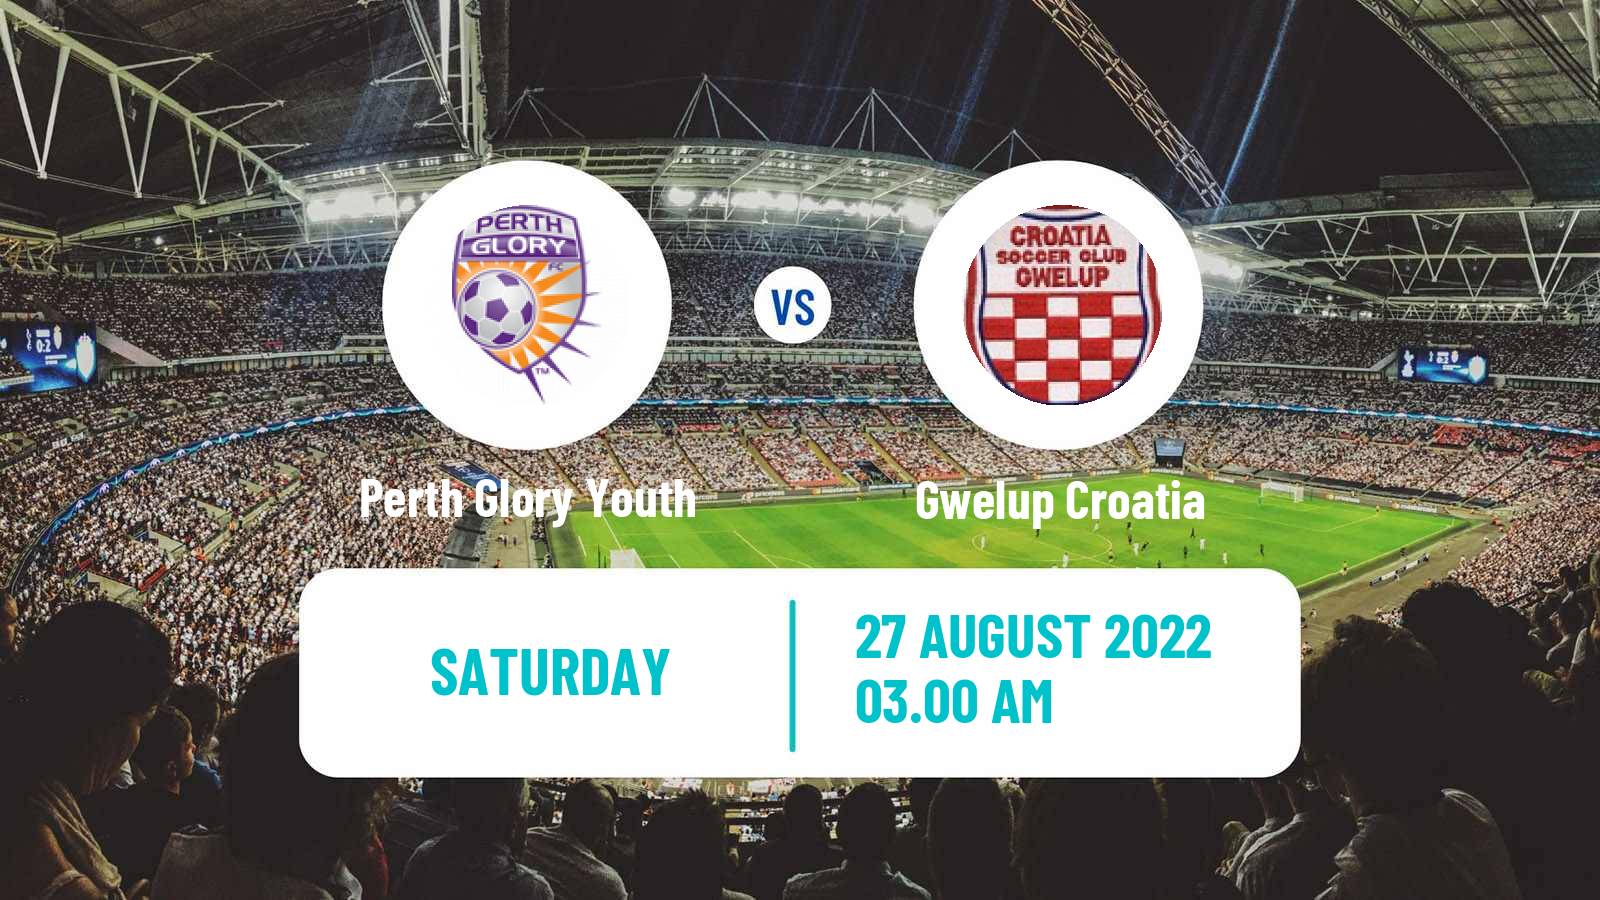 Soccer Australian NPL Western Australia Perth Glory Youth - Gwelup Croatia